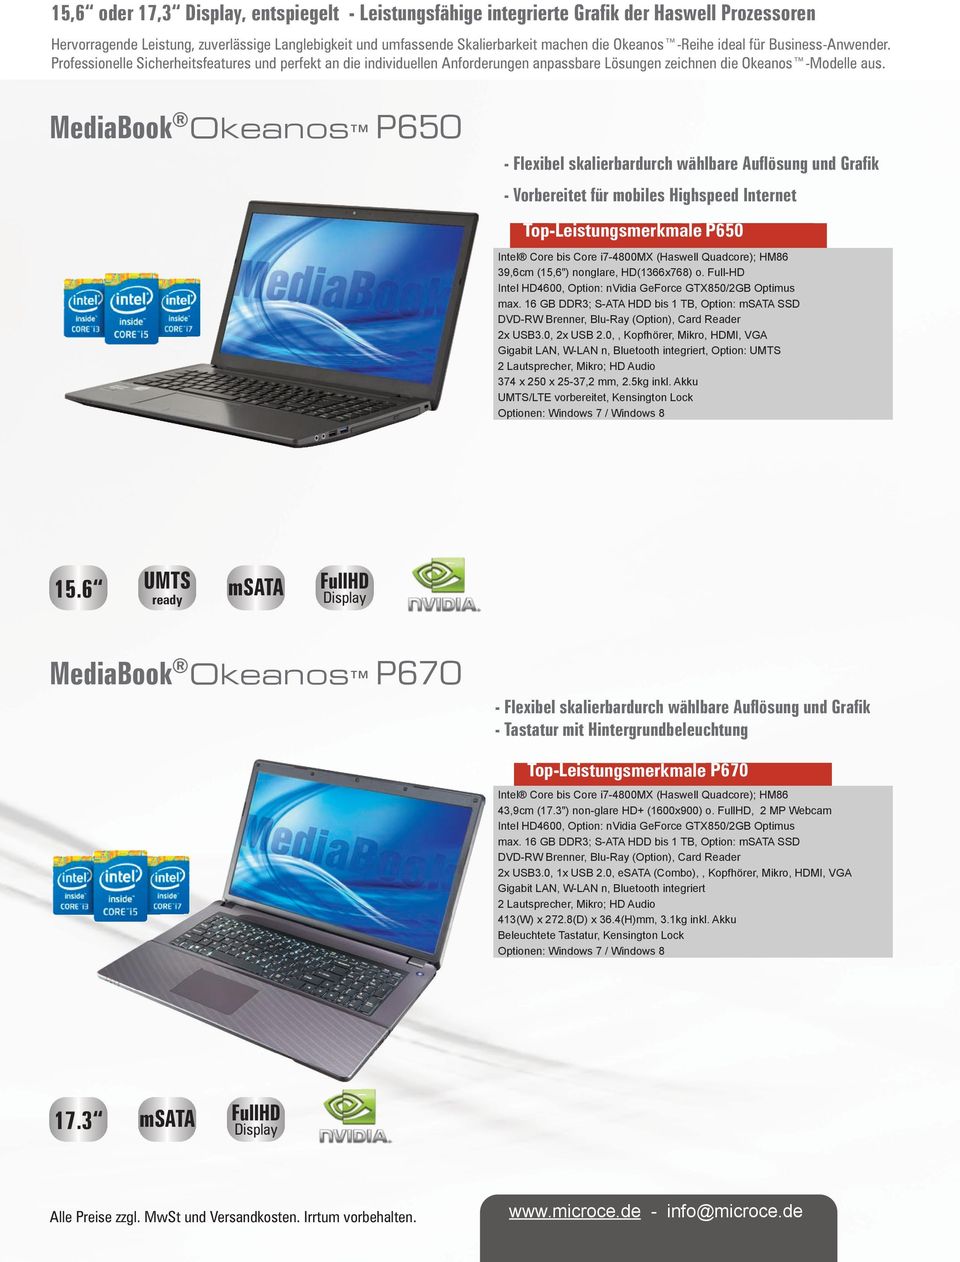 MediaBook Okeanos P650 - Flexibel skalierbardurch wählbare Auflösung und Grafik - Vorbereitet für mobiles Highspeed Internet Top-Leistungsmerkmale P650 Intel Core bis Core i7-4800mx (Haswell